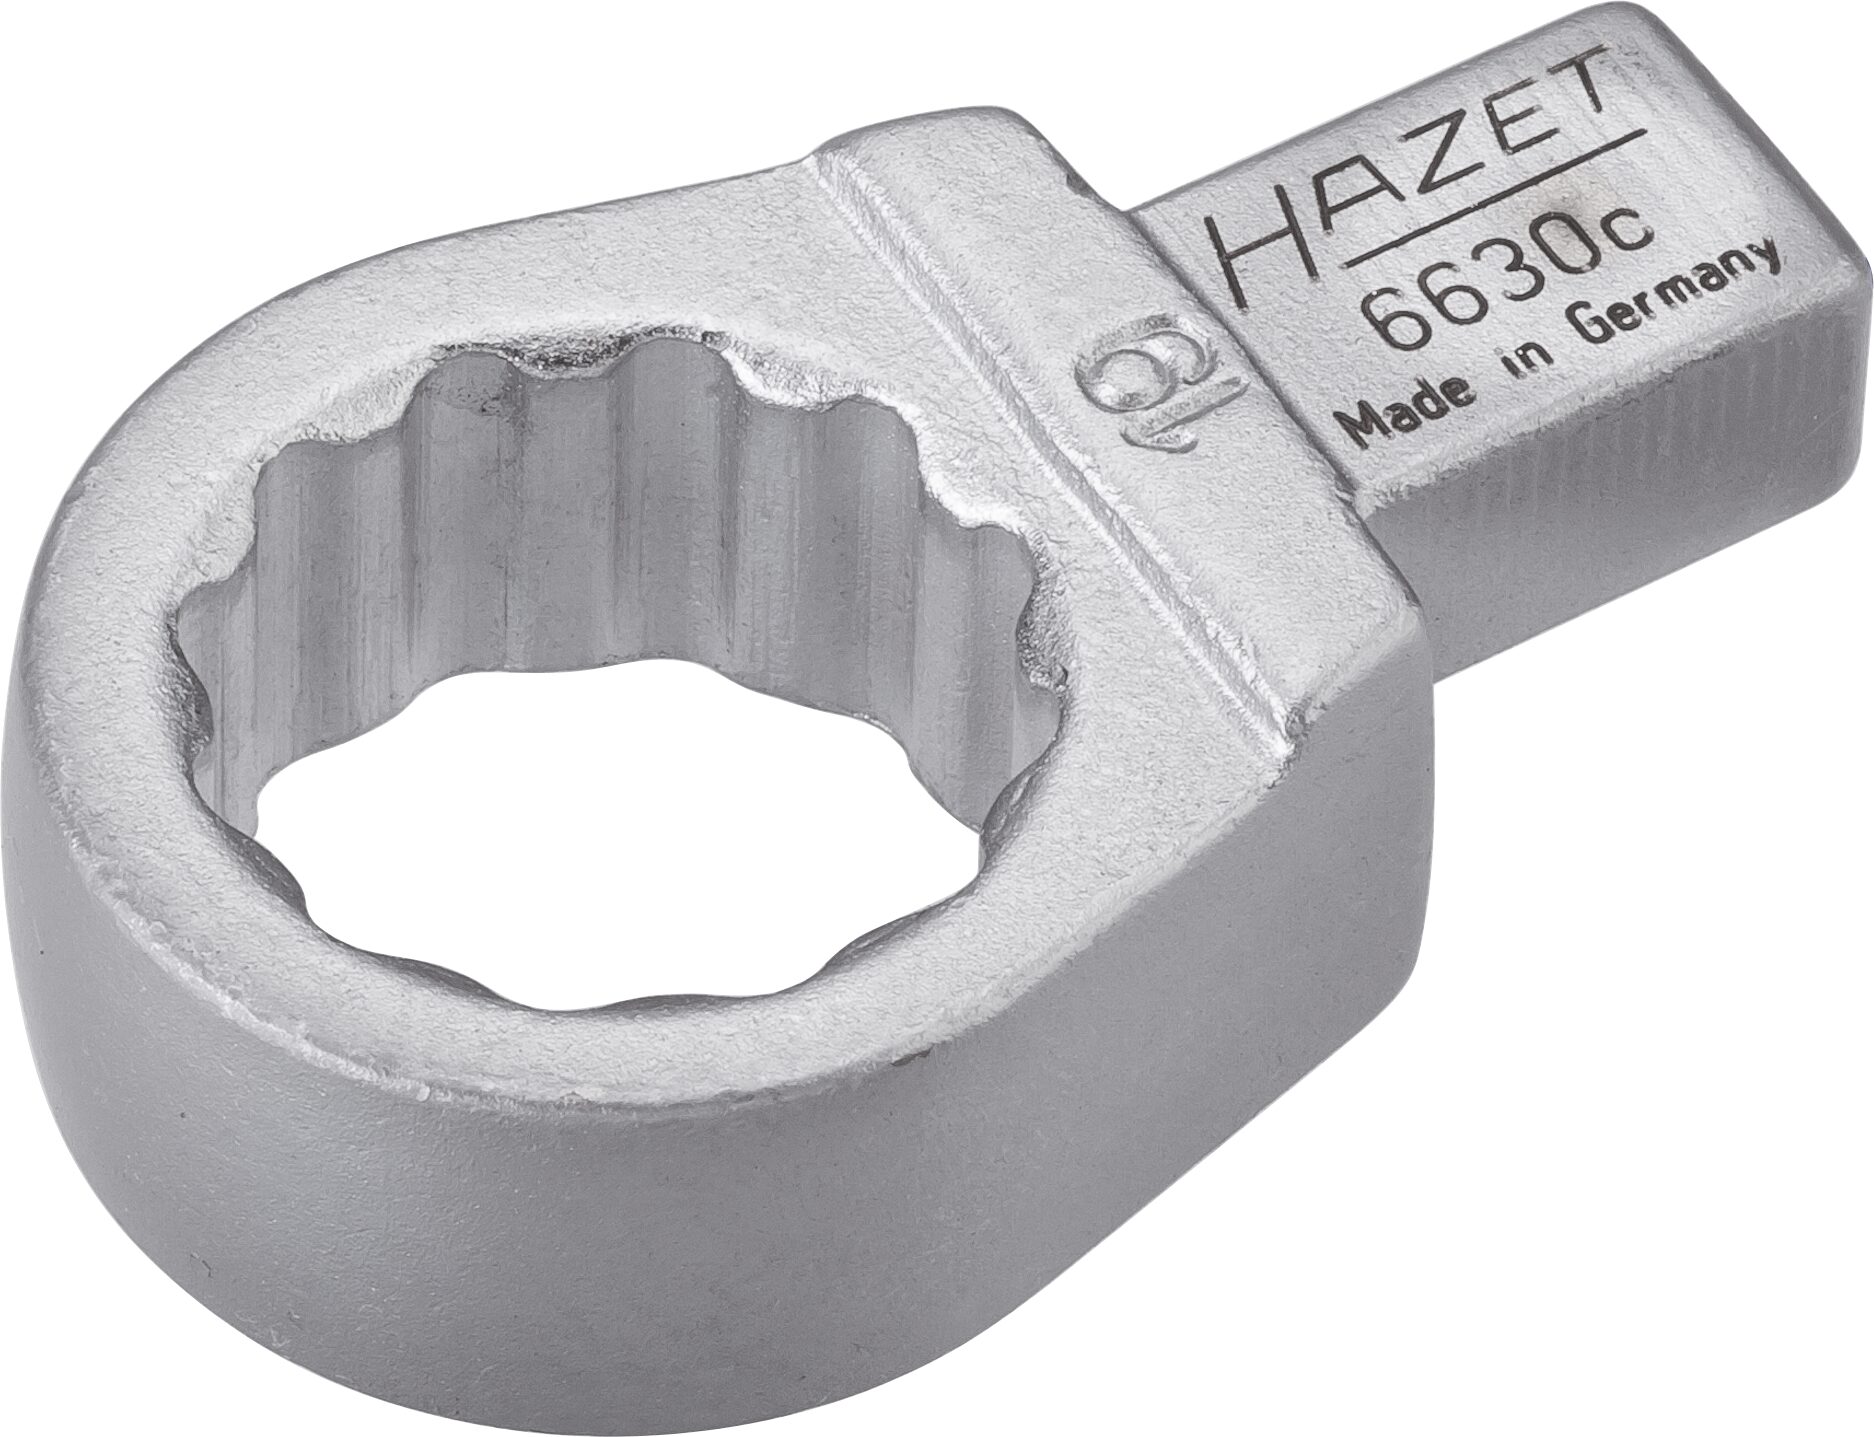 HAZET Einsteck-Ringschlüssel 6630C-19 · Einsteck-Vierkant 9 x 12 mm · Außen Doppel-Sechskant-Tractionsprofil · 19 mm